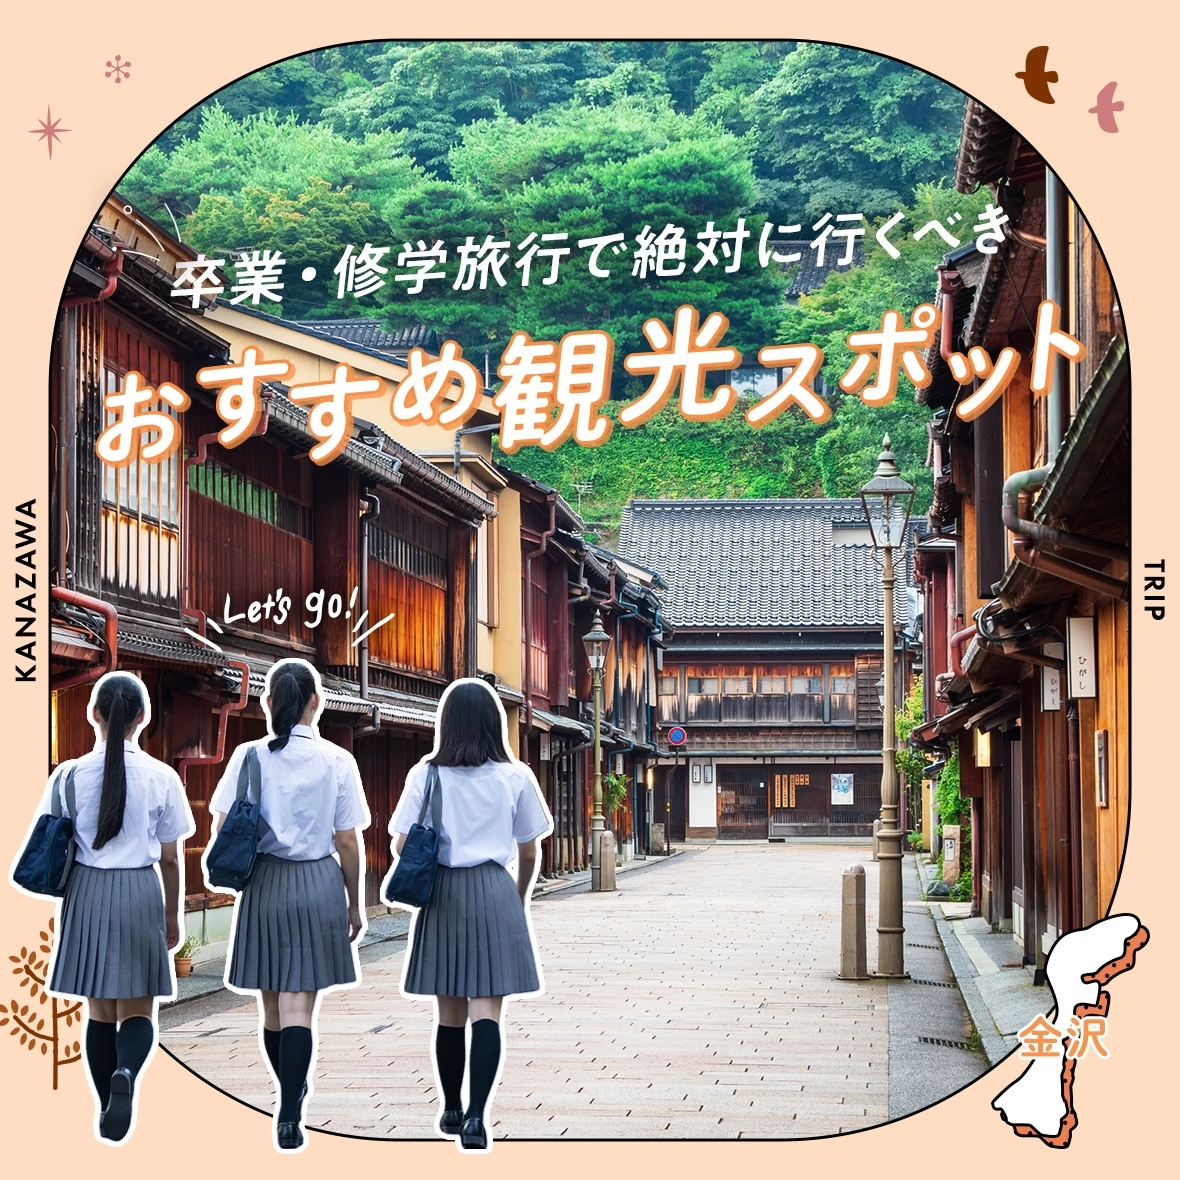 【金沢】卒業・修学旅行で絶対に行くべきおすすめ観光スポット8選